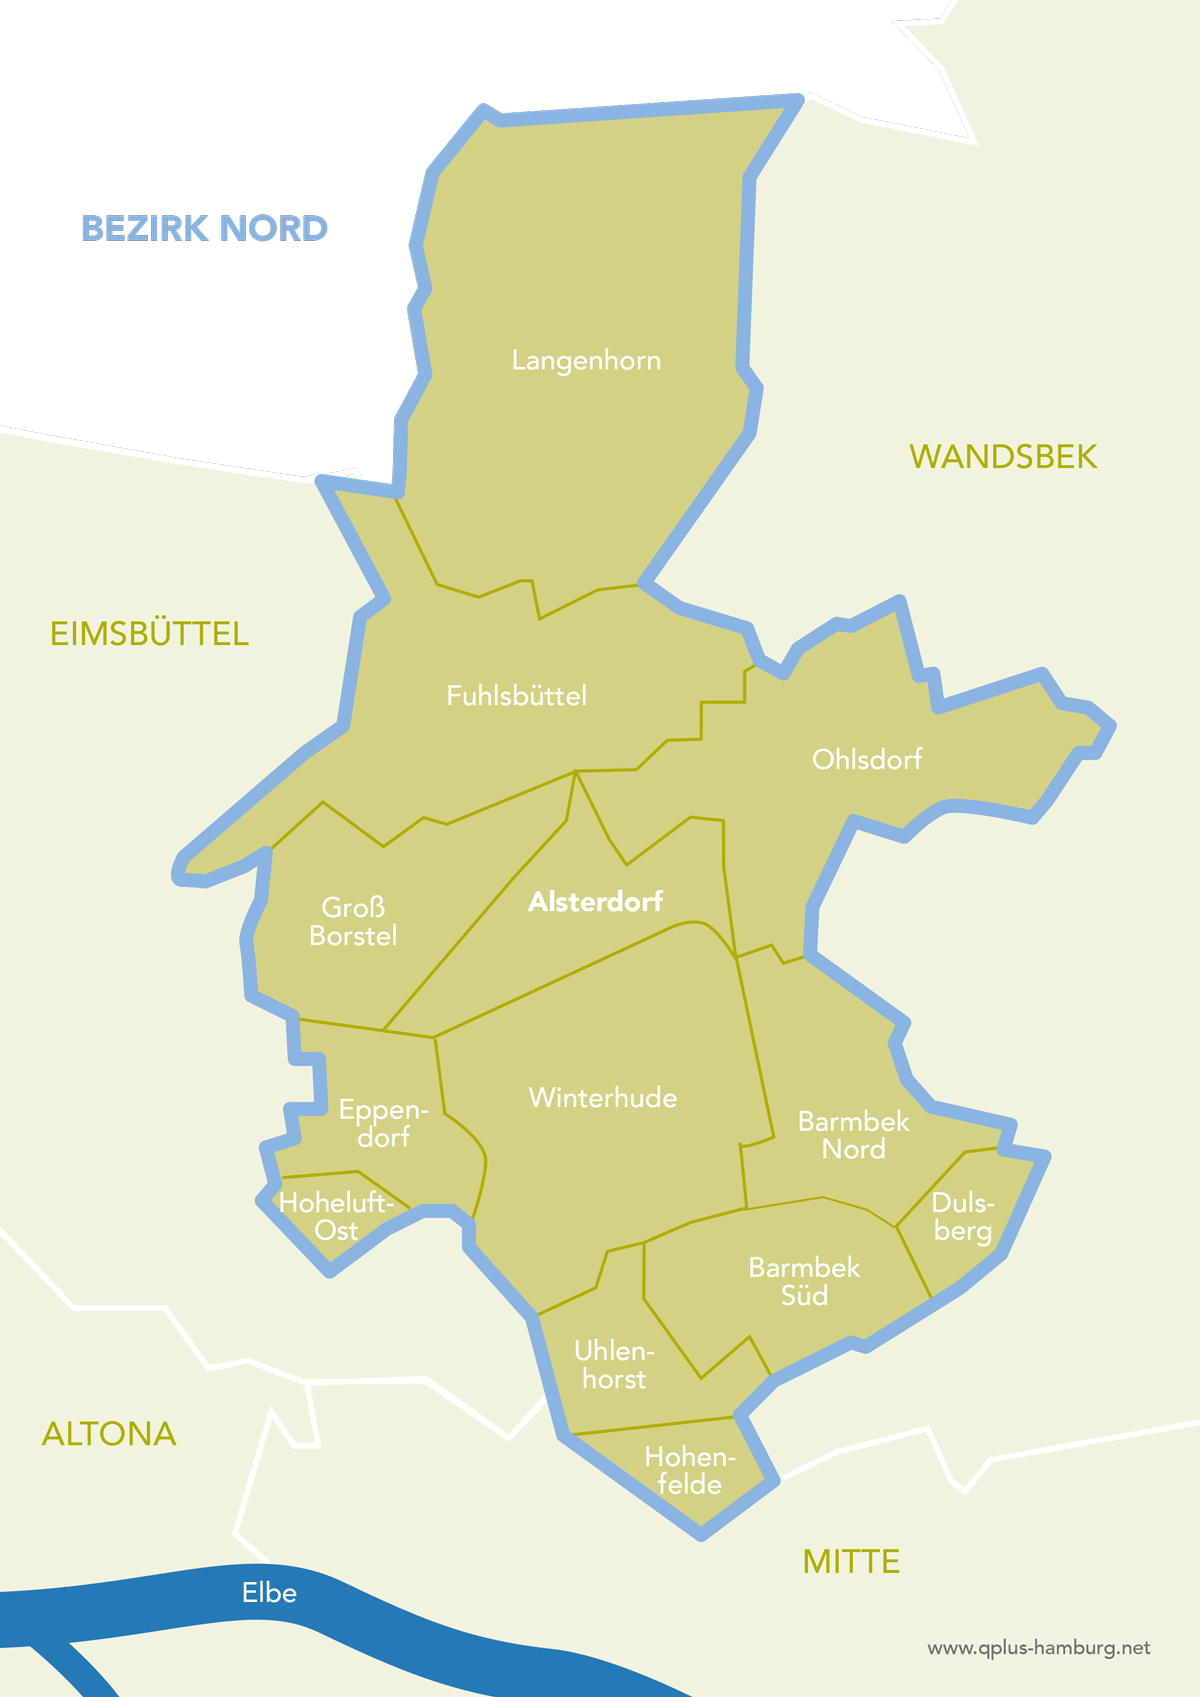 Bezirkskarte Hamburg-Nord: Langenhorn, Fuhlsbüttel, Ohlsdorf, Groß Borstel, Alsterdorf, Eppendorf, Winterhude, Hoheluft-Ost, Barmbek Nord, Barmbek Süd, Dulsberg, Uhlenhorst, Hohenfelde